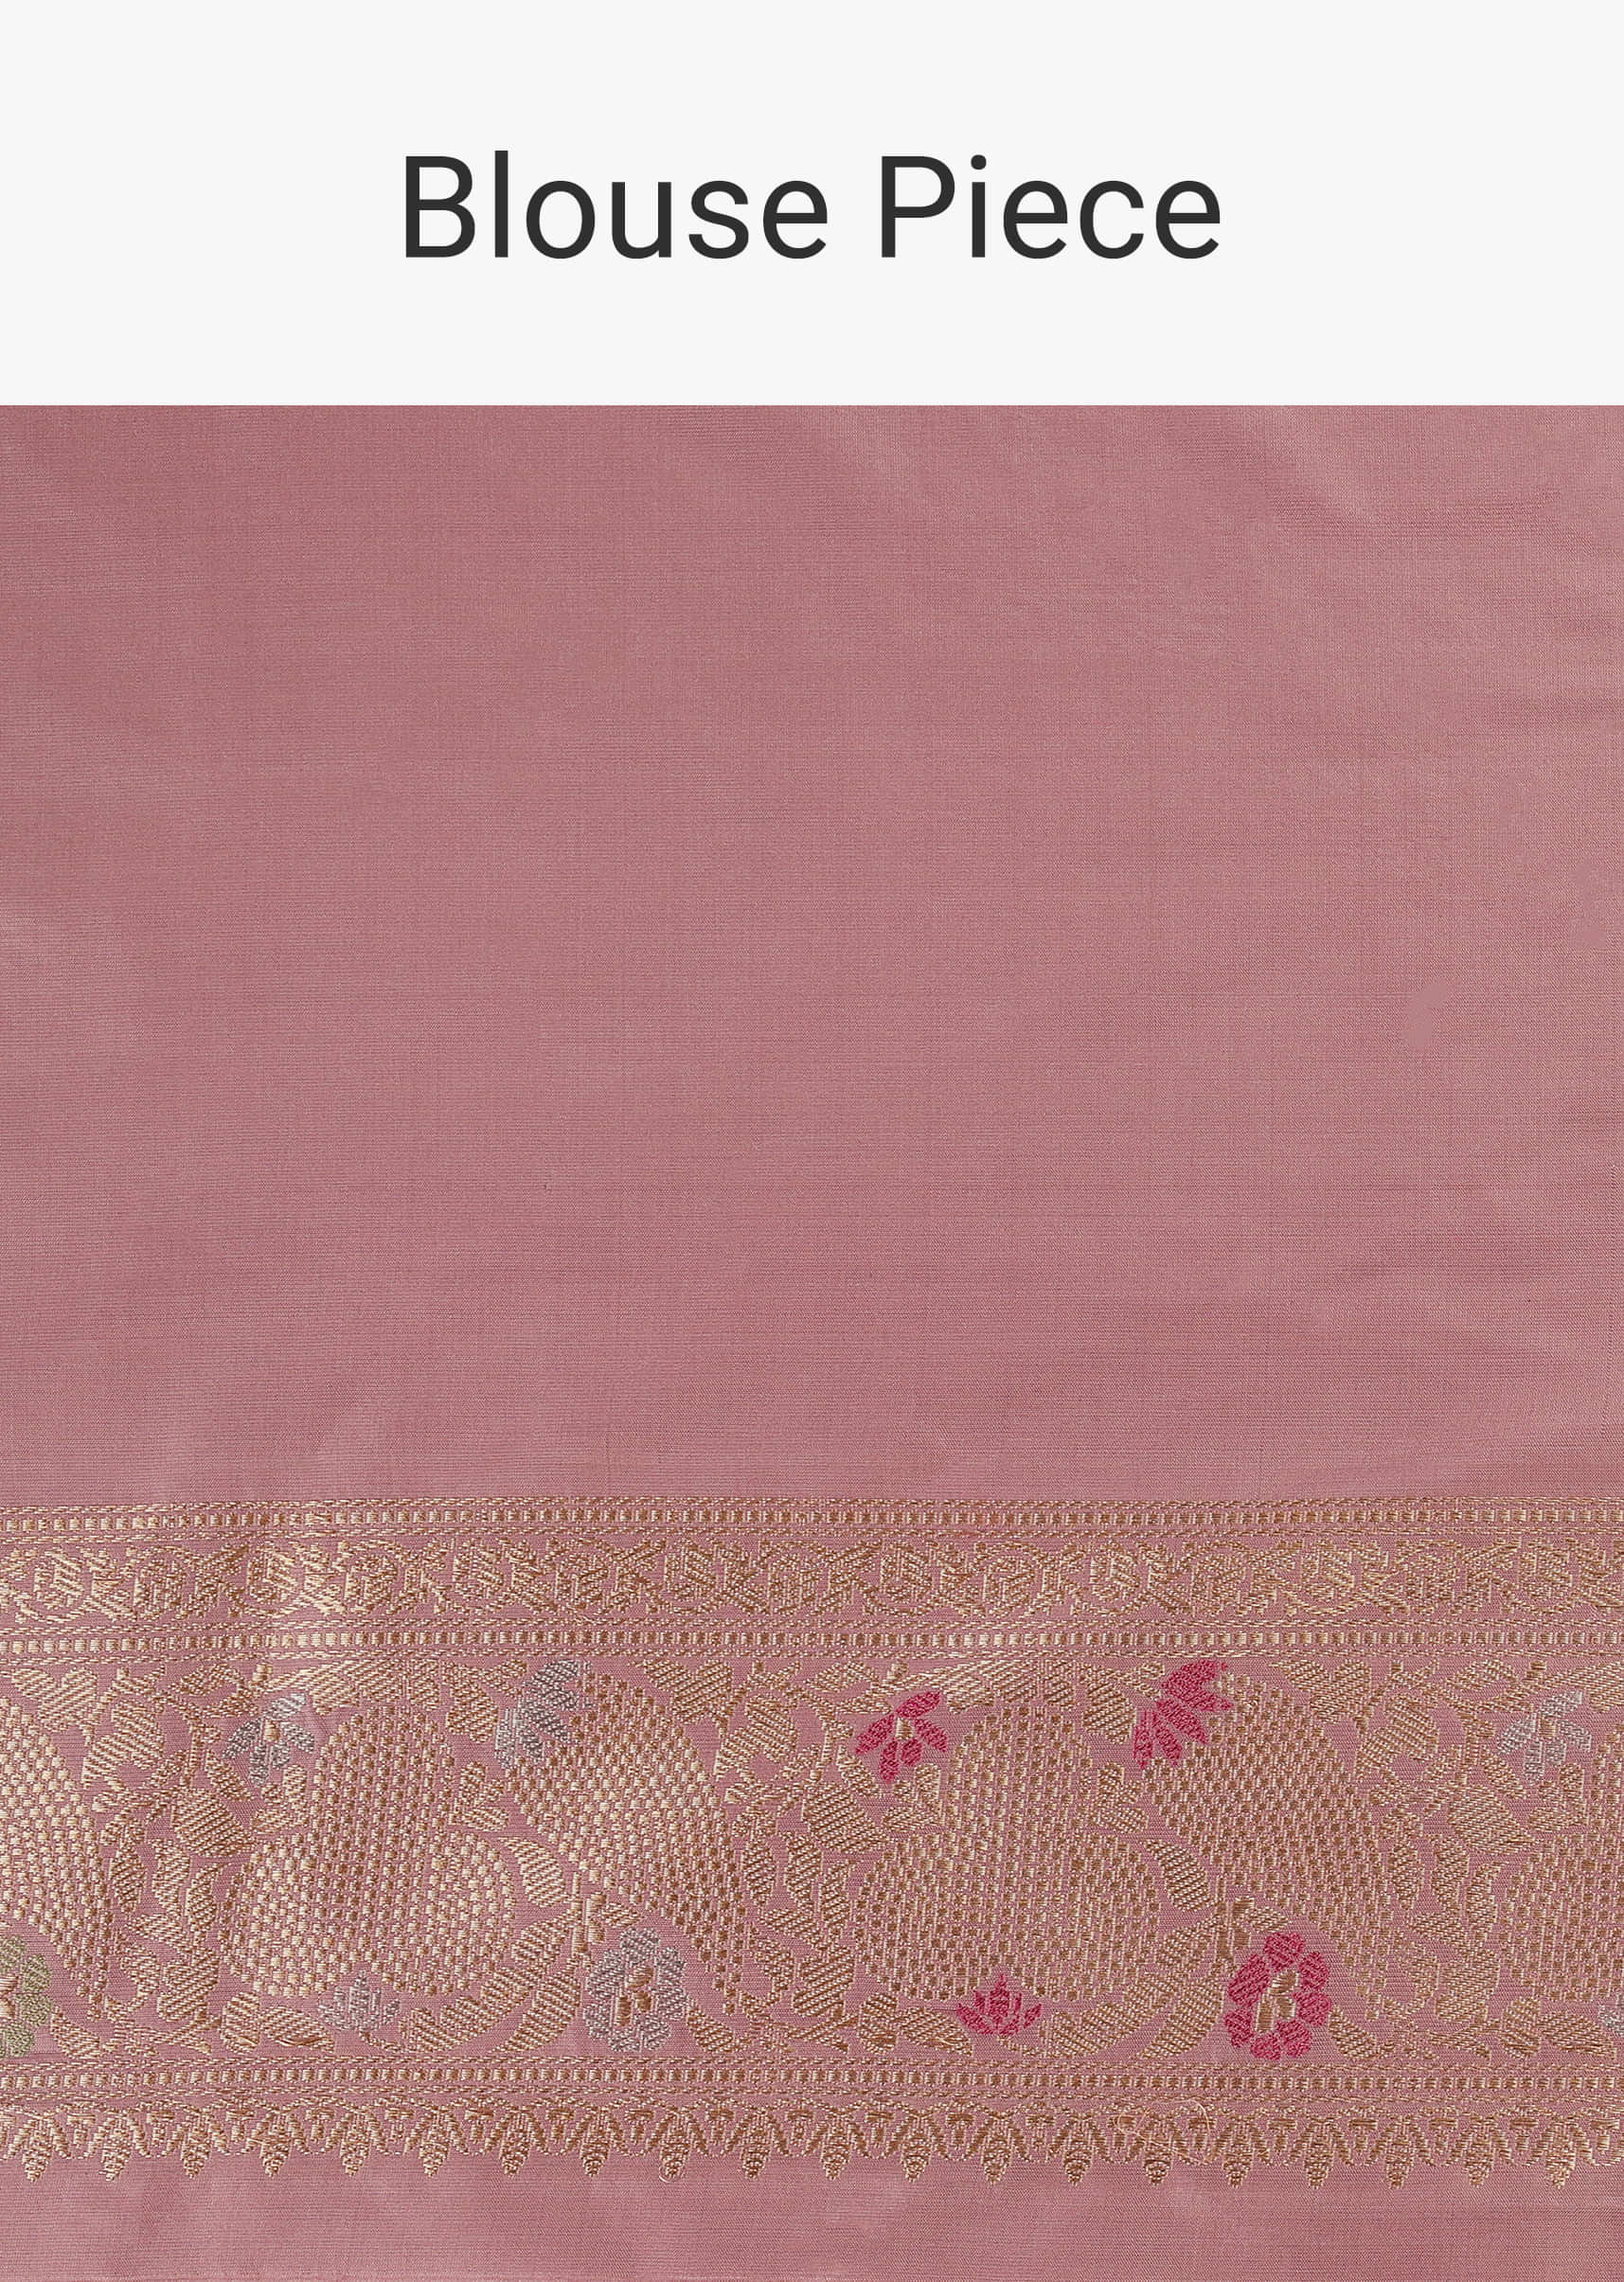 Onion Pink Handloom Banarasi Saree With Meenakari Weave In Uppada Silk